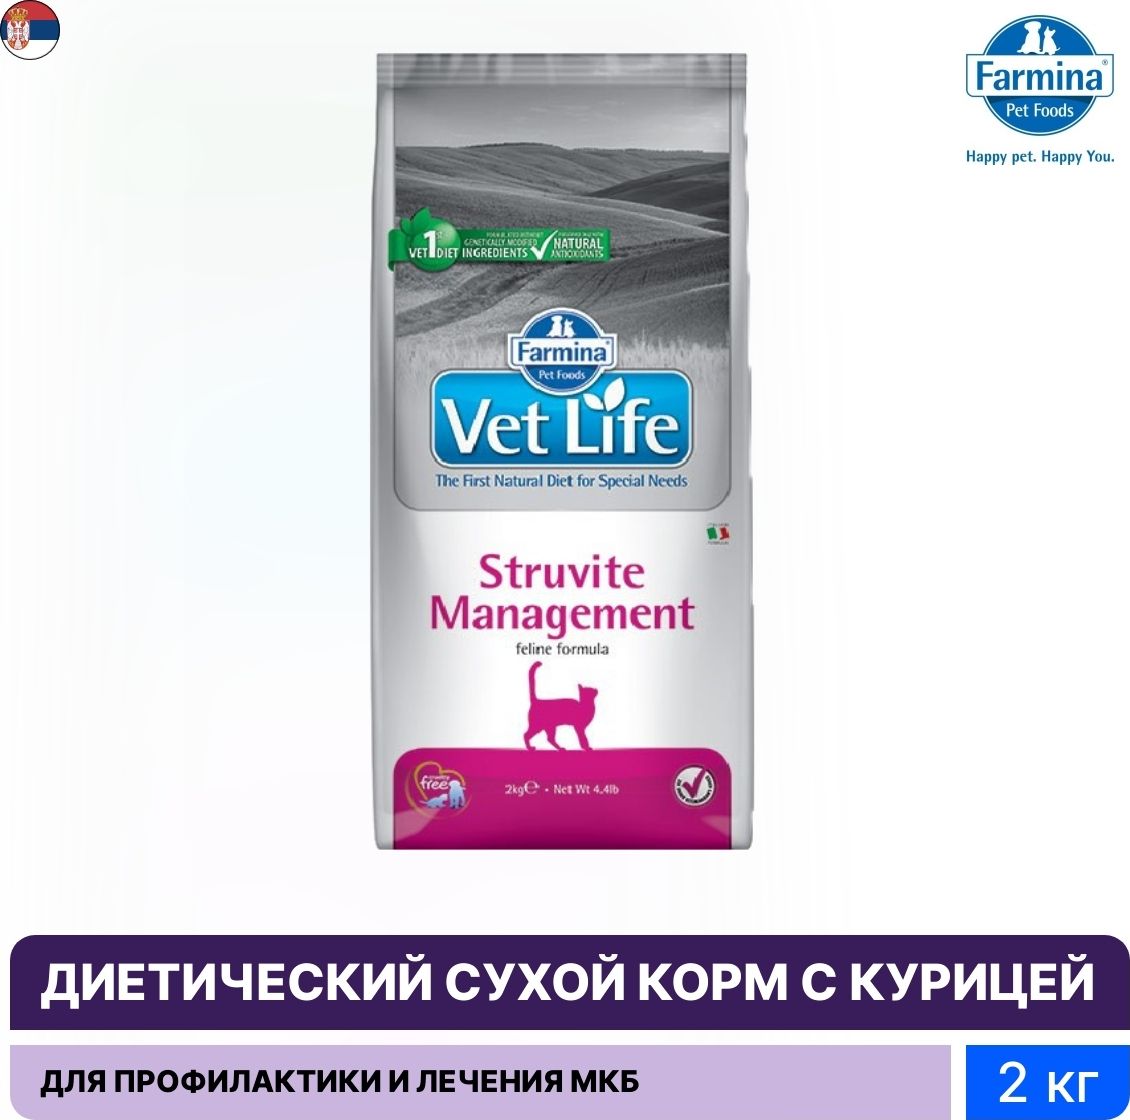 Vet life ultrahypo для кошек. Vet Life Struvite Management для кошек. Farmina Struvite Management. Фармина Струвит. Farmina vet Life контроль веса.